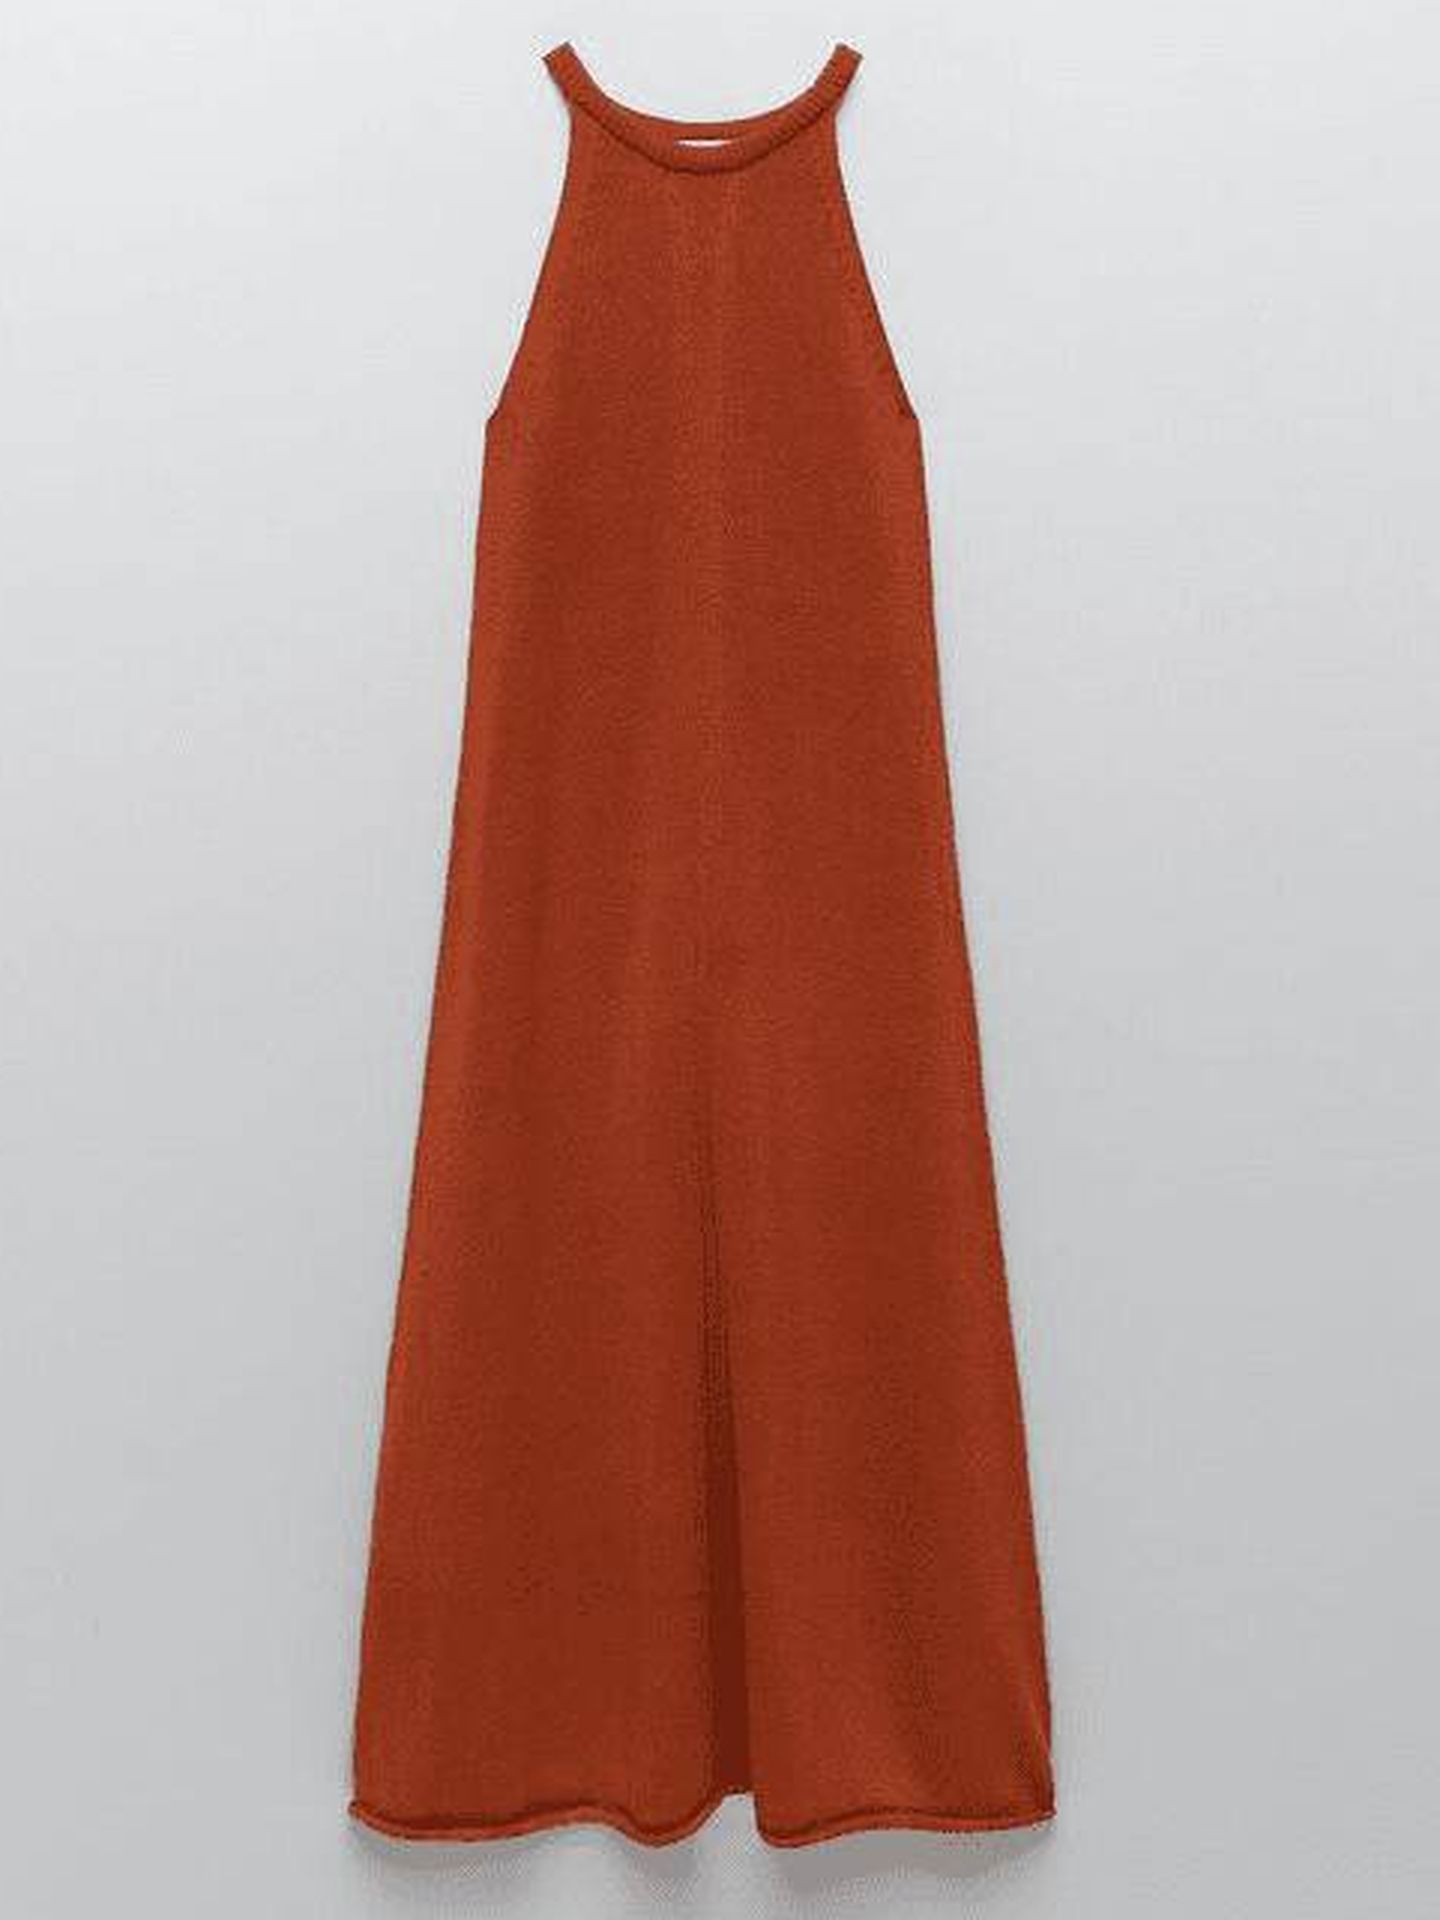  El vestido de Zara.